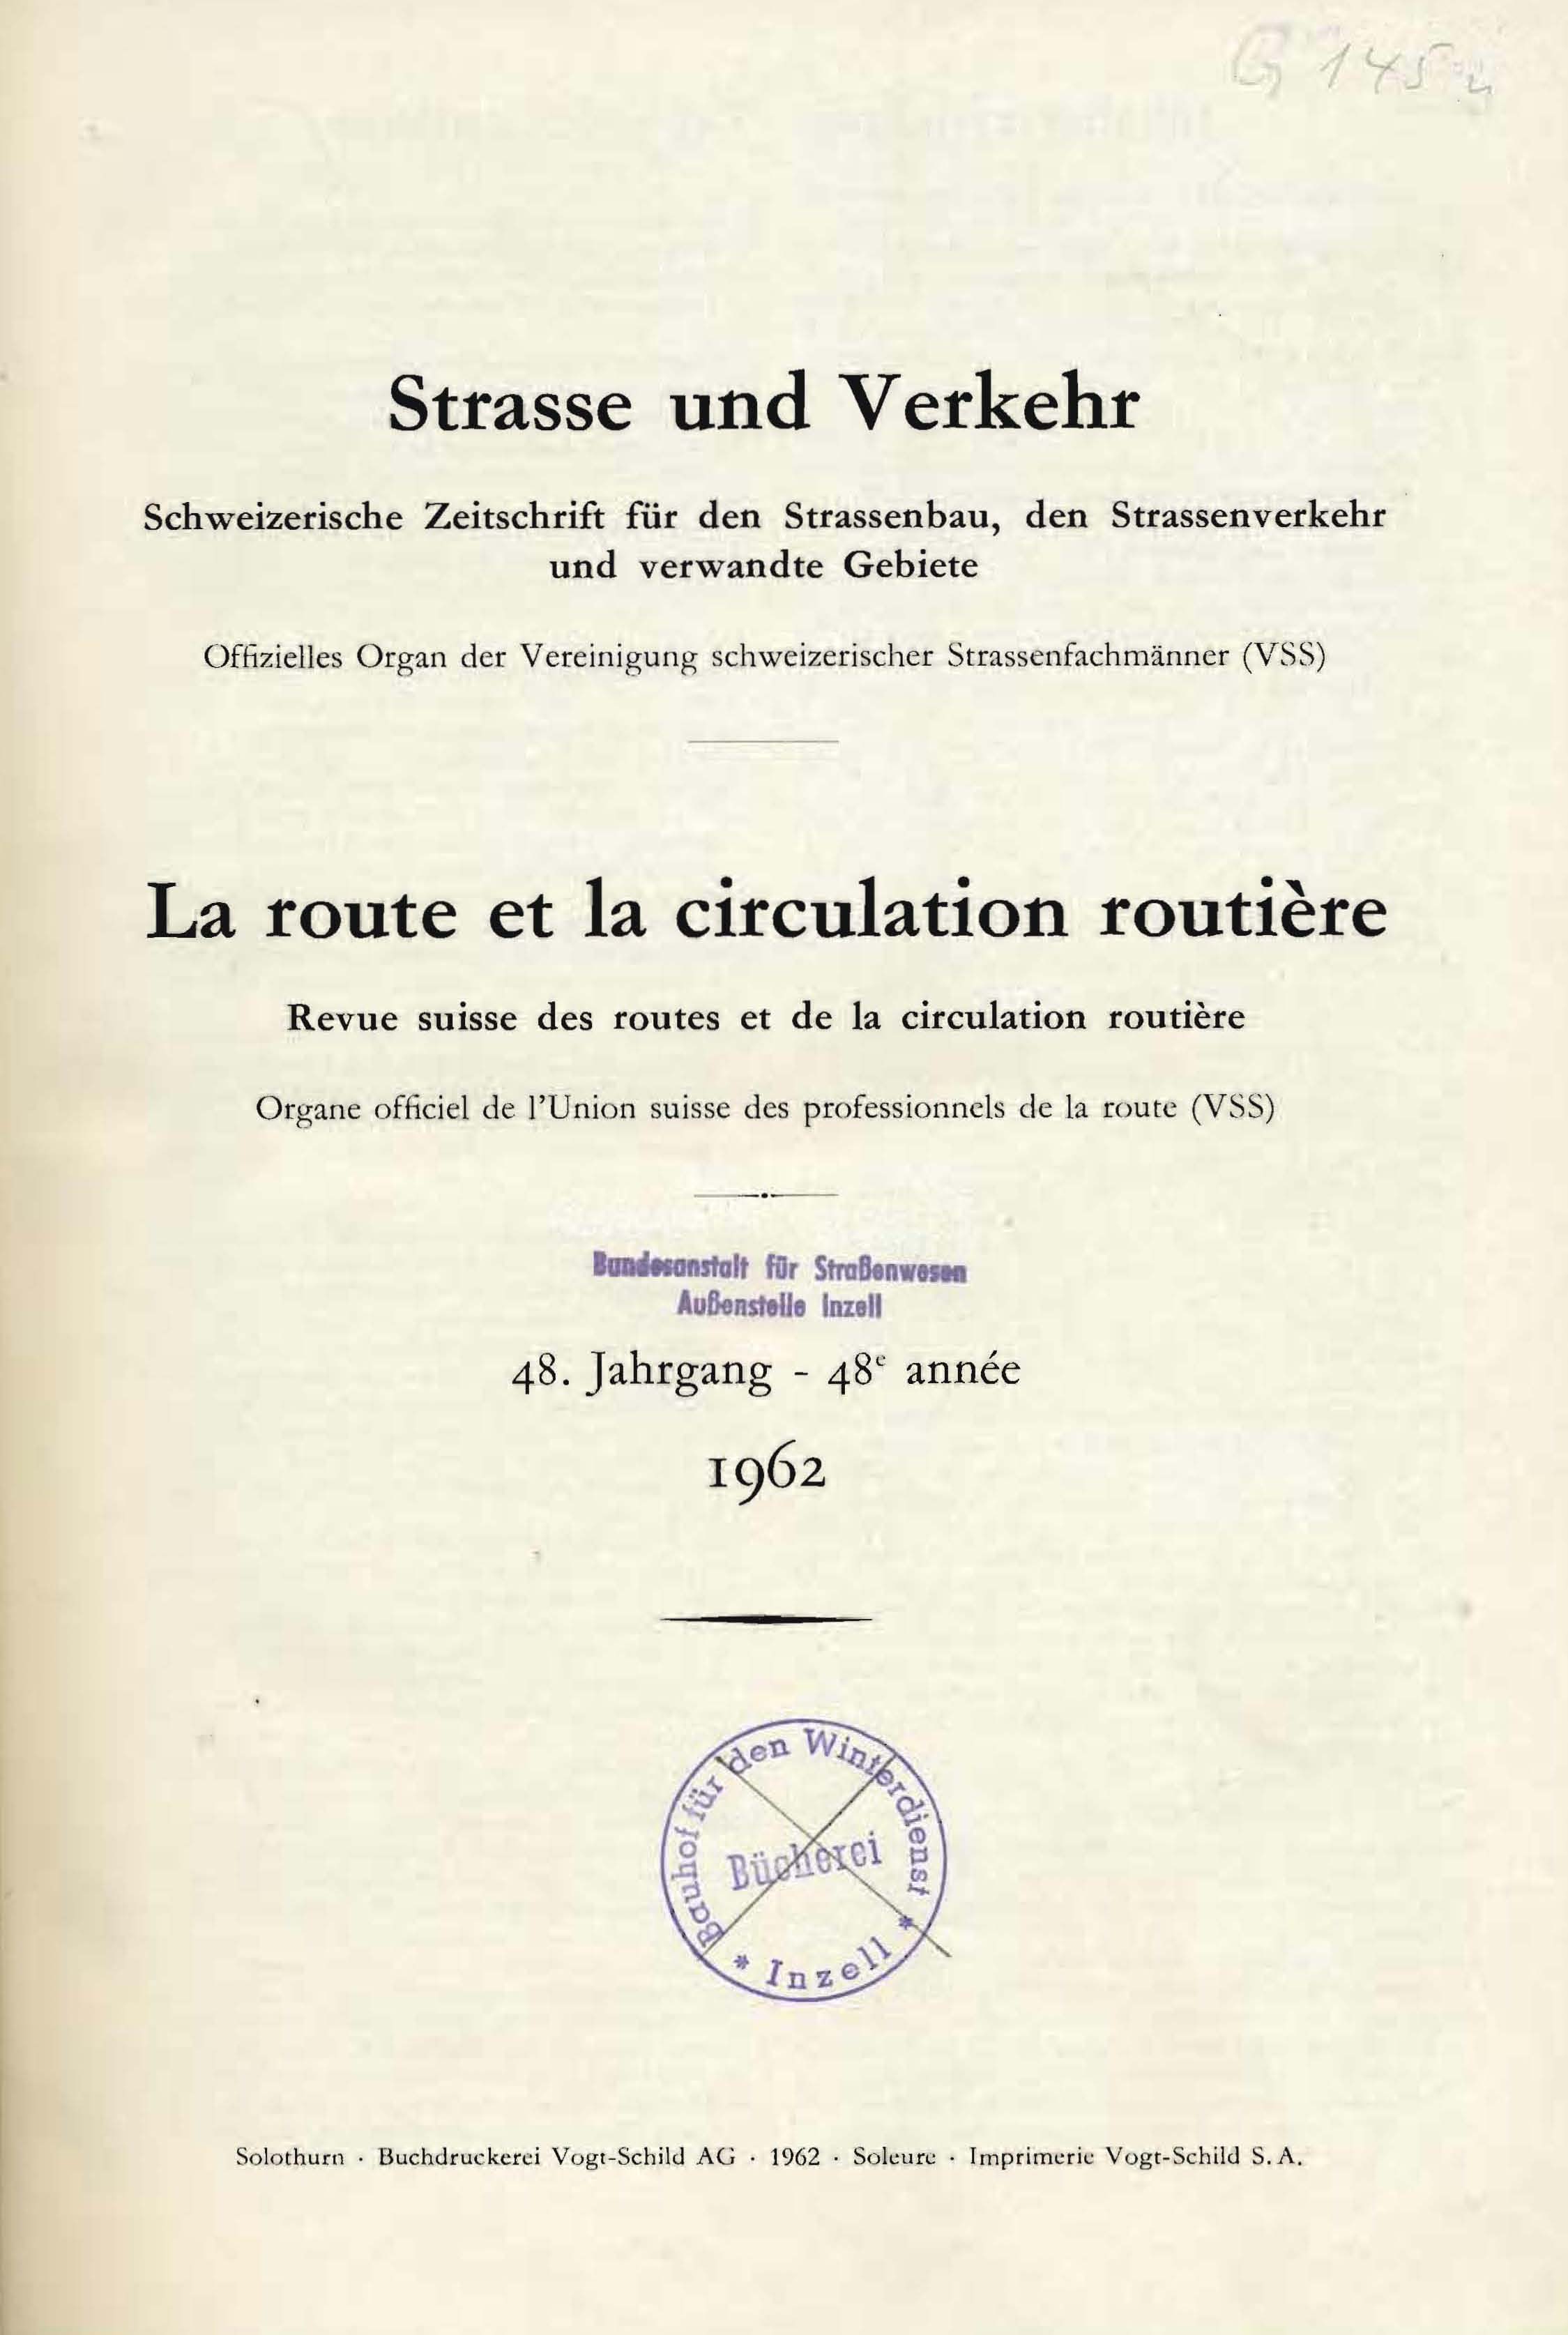 Strasse und Verkehr, 48. Jahrgang 1962